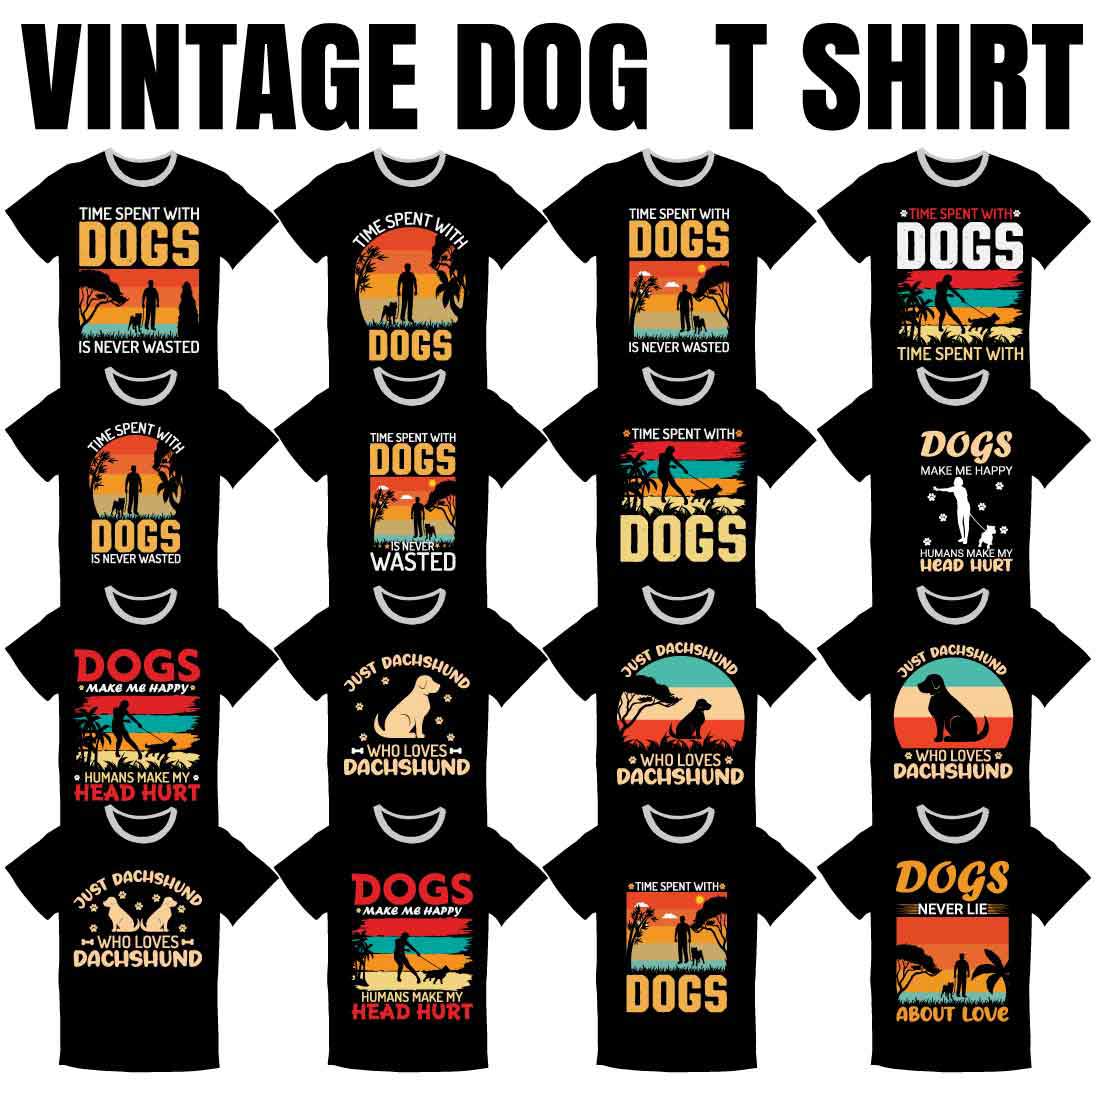 15 Dog Vintage T-shirt Bundle image cover.